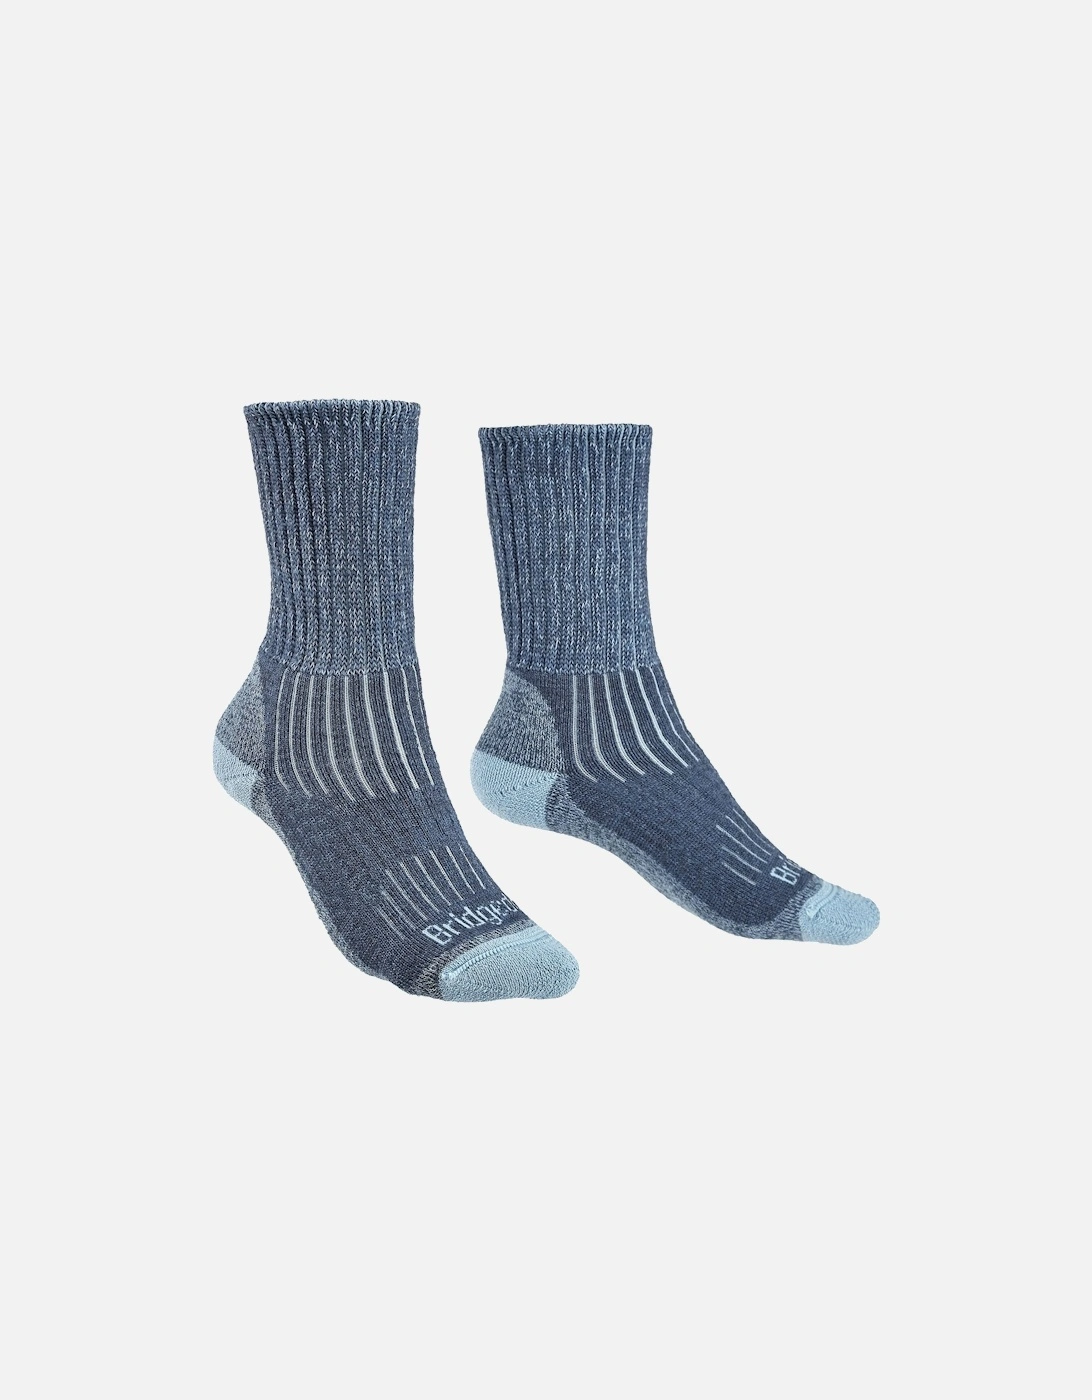 Womens Midweight Merino Comfort Walking Socks, 11 of 10